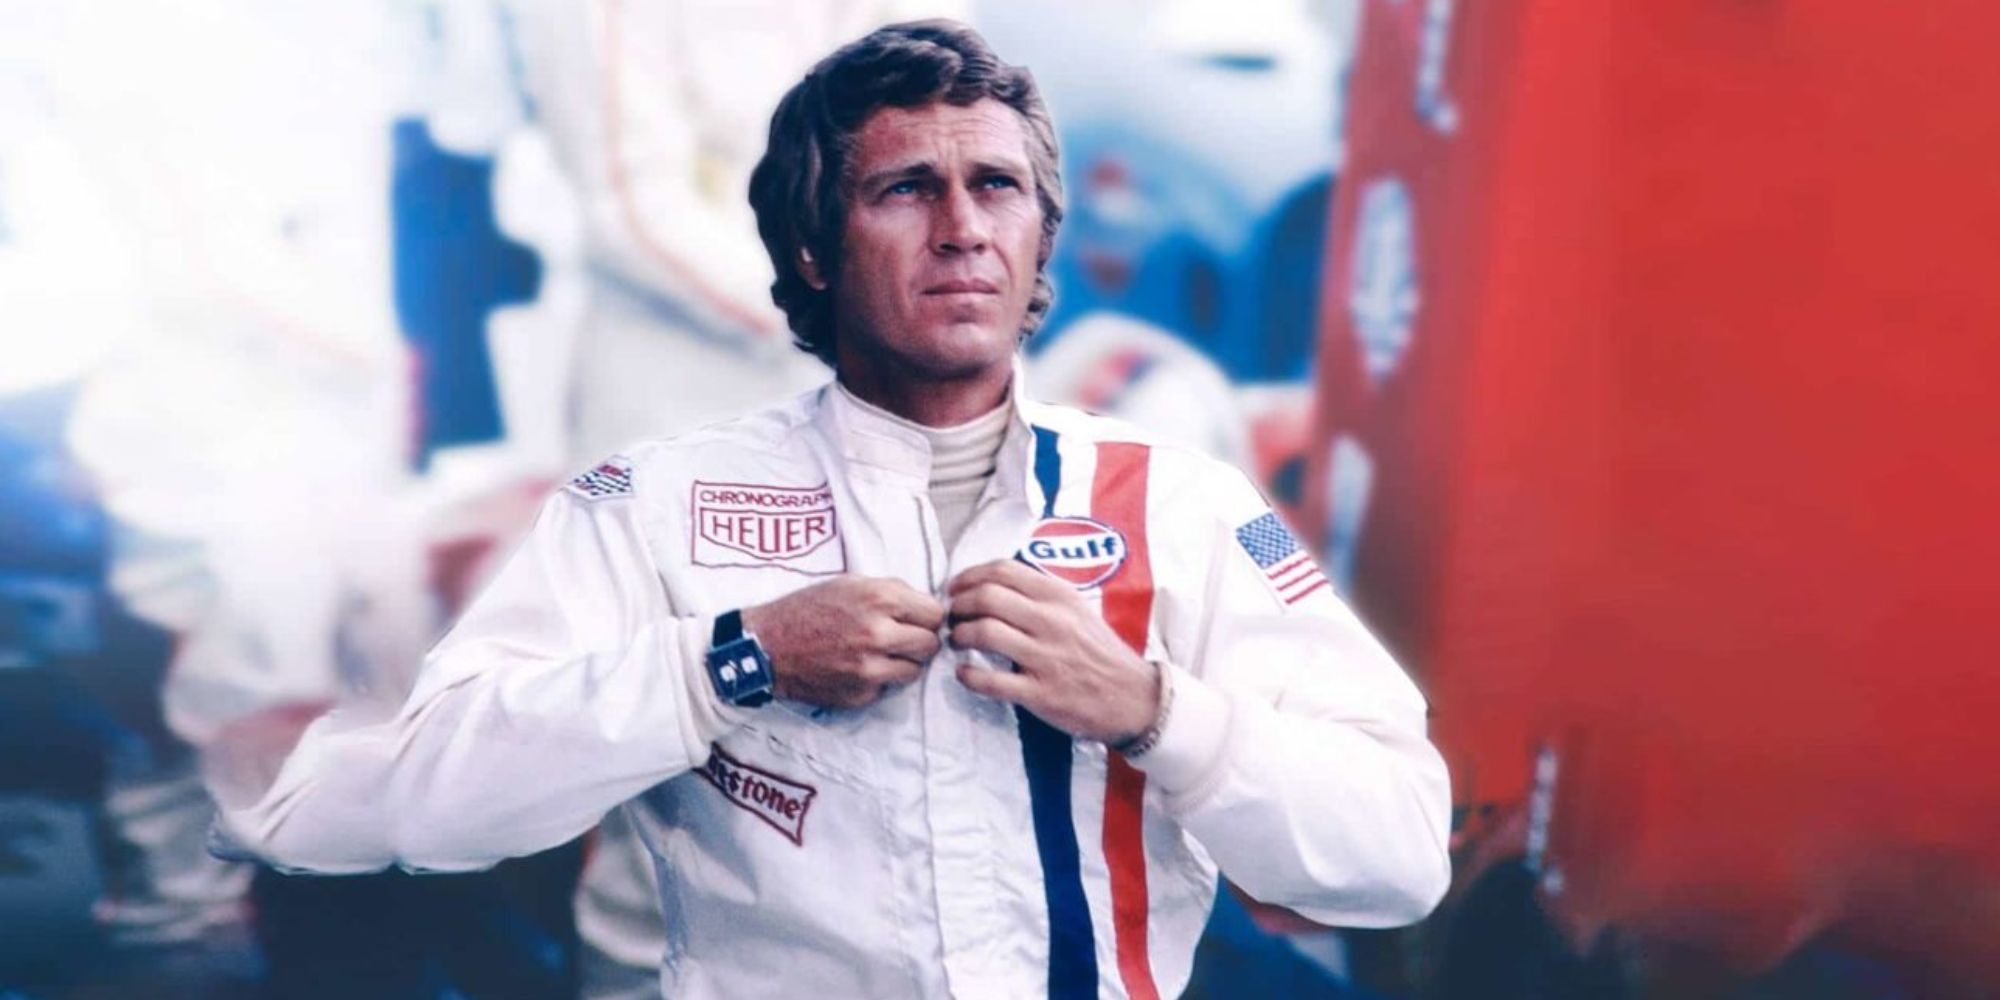 Le Mans - 1971